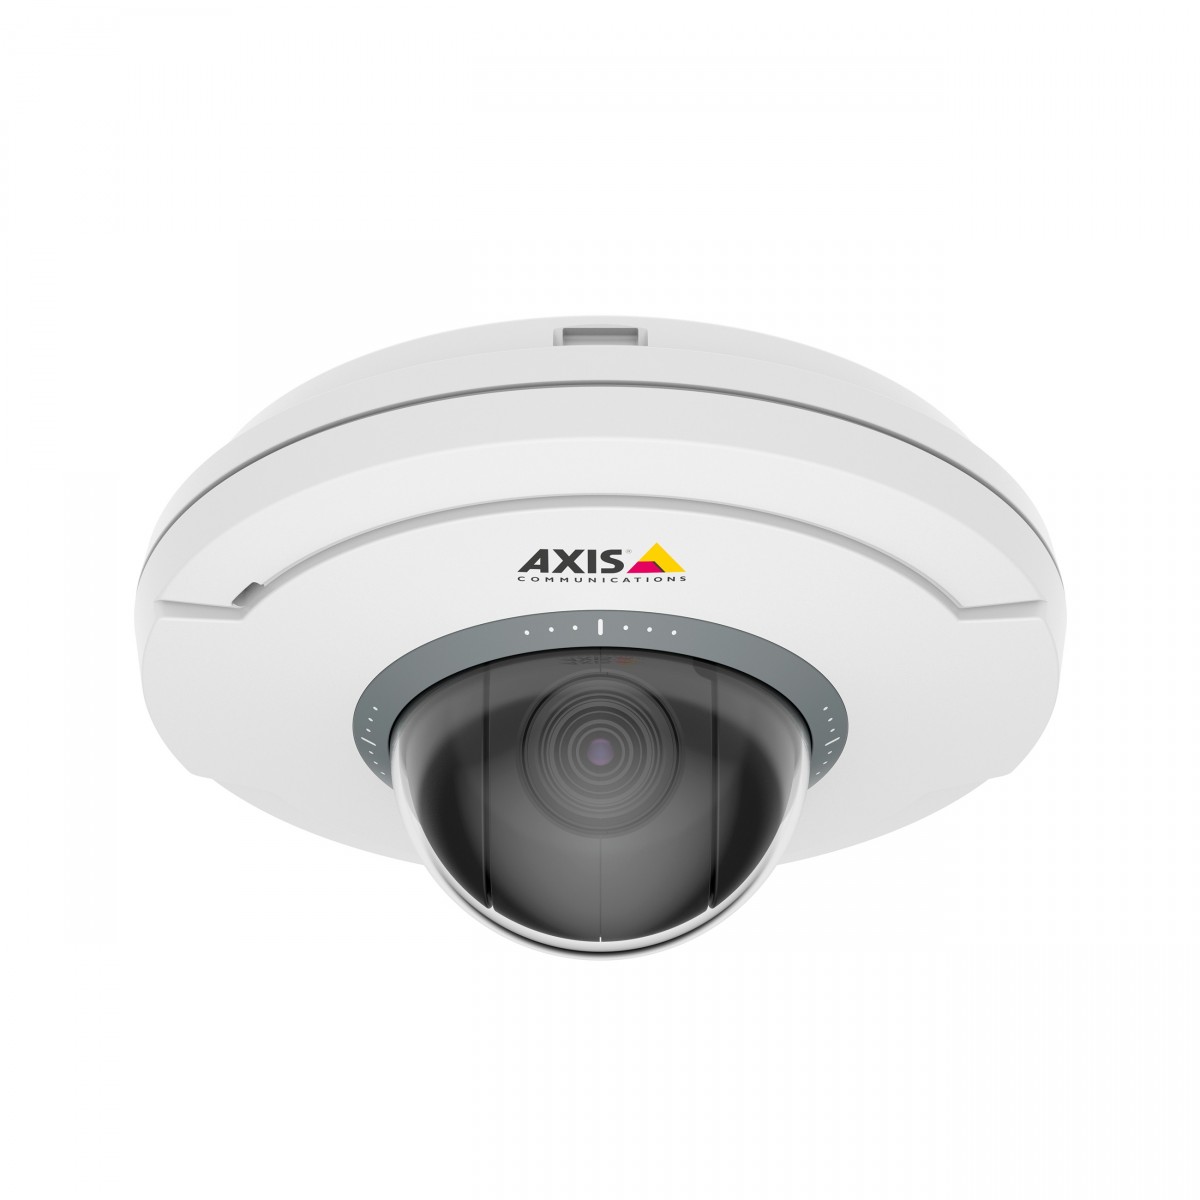 Axis M5074 Ceiling-mount mini PTZ dome cam 5x Optical zoom autofocus HDTV 720p 30fps H